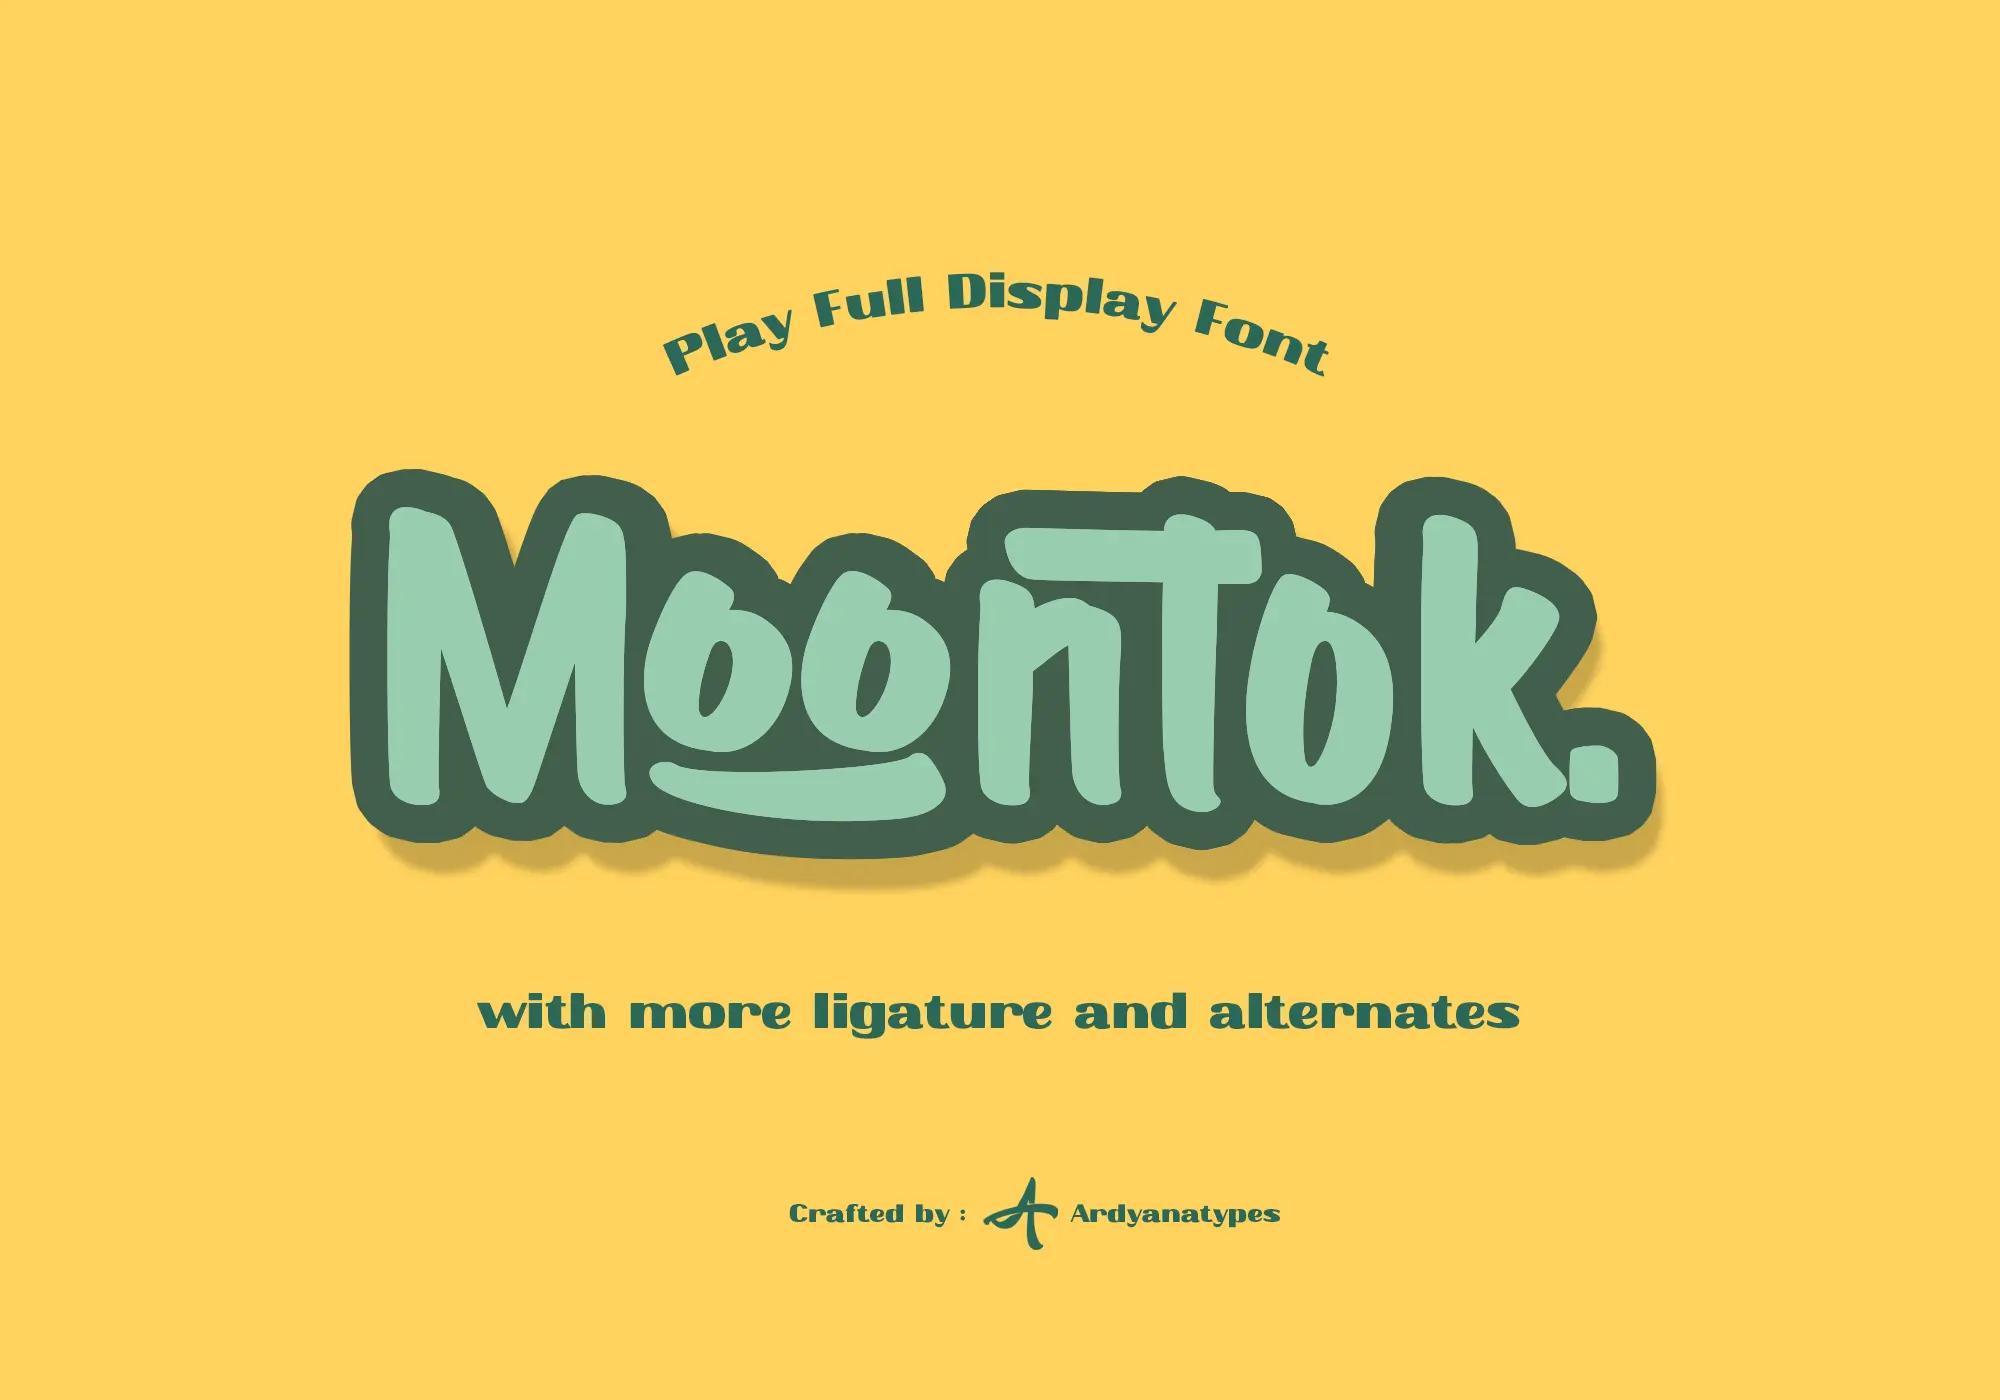 Moontok - Play Full Display Font